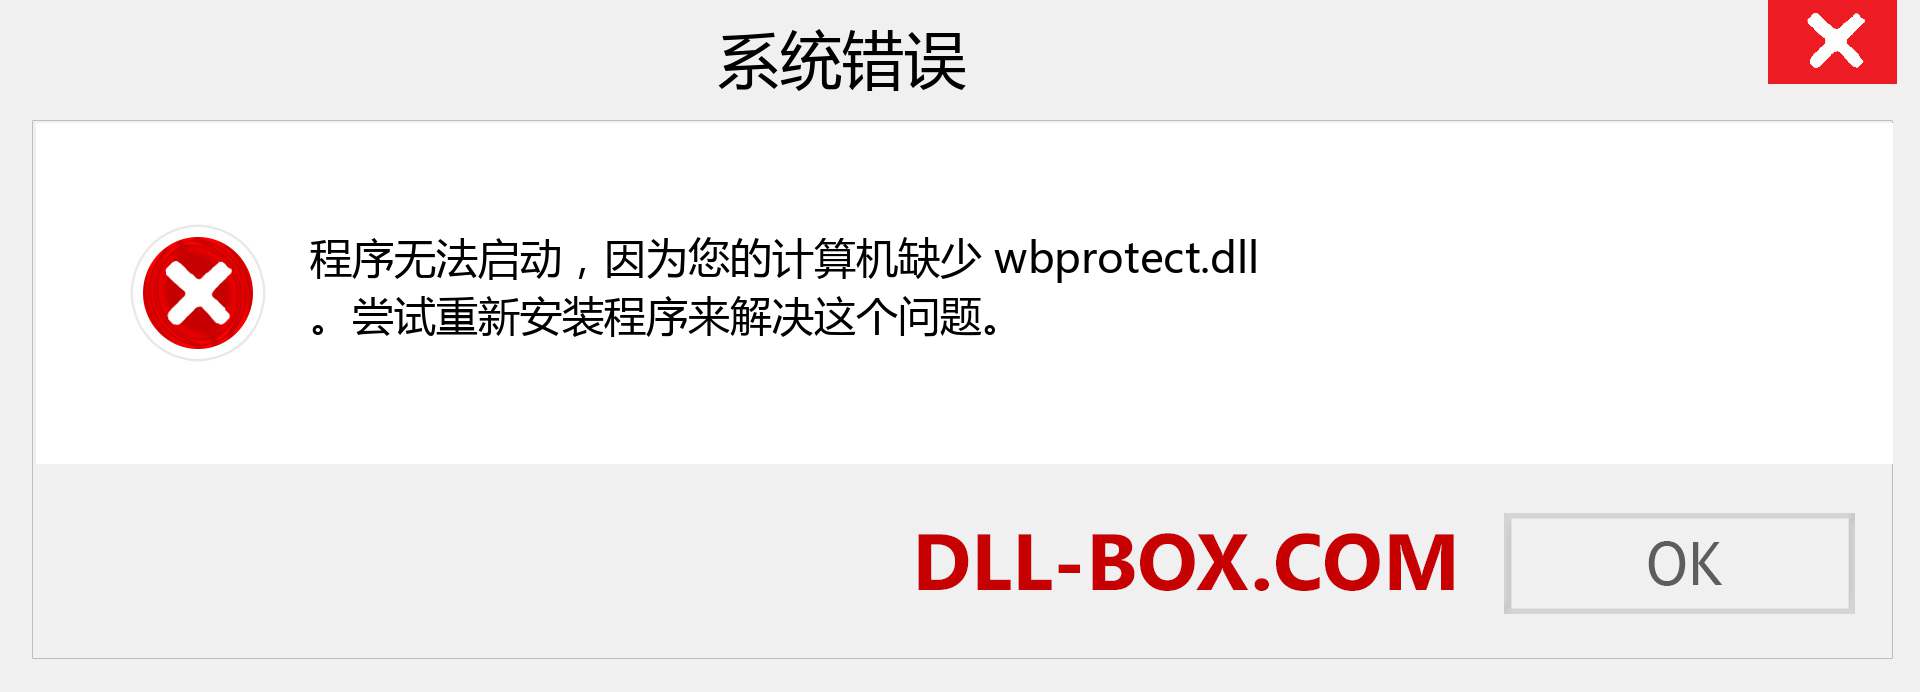 wbprotect.dll 文件丢失？。 适用于 Windows 7、8、10 的下载 - 修复 Windows、照片、图像上的 wbprotect dll 丢失错误